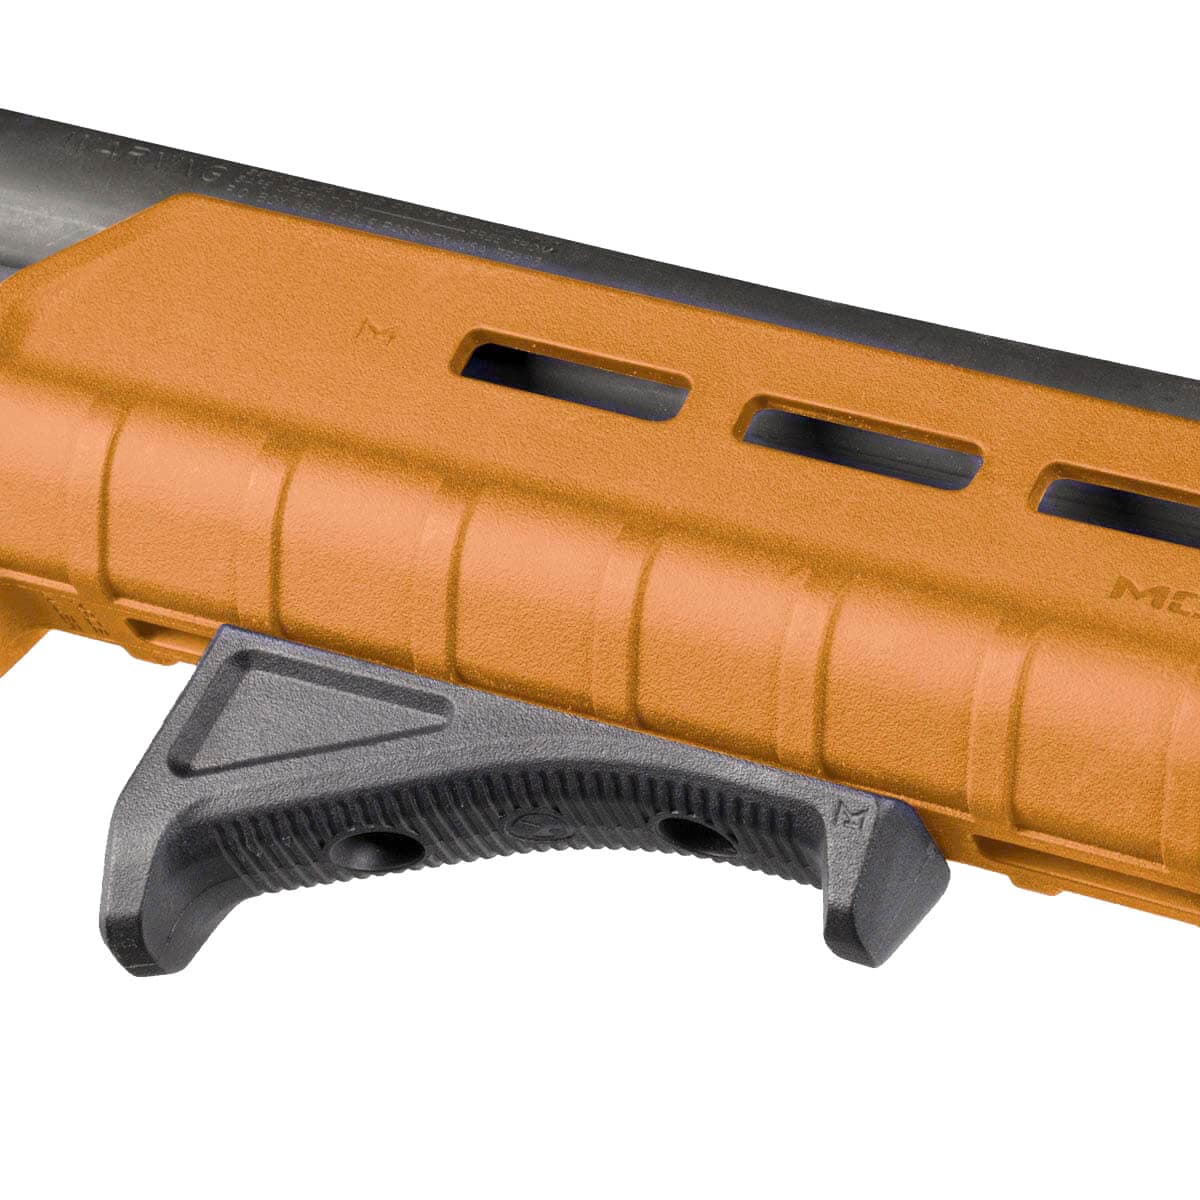 Передня рукоятка Magpul MOE M-LOK Forend для рушниць Mossberg 590/590A1 - Orange